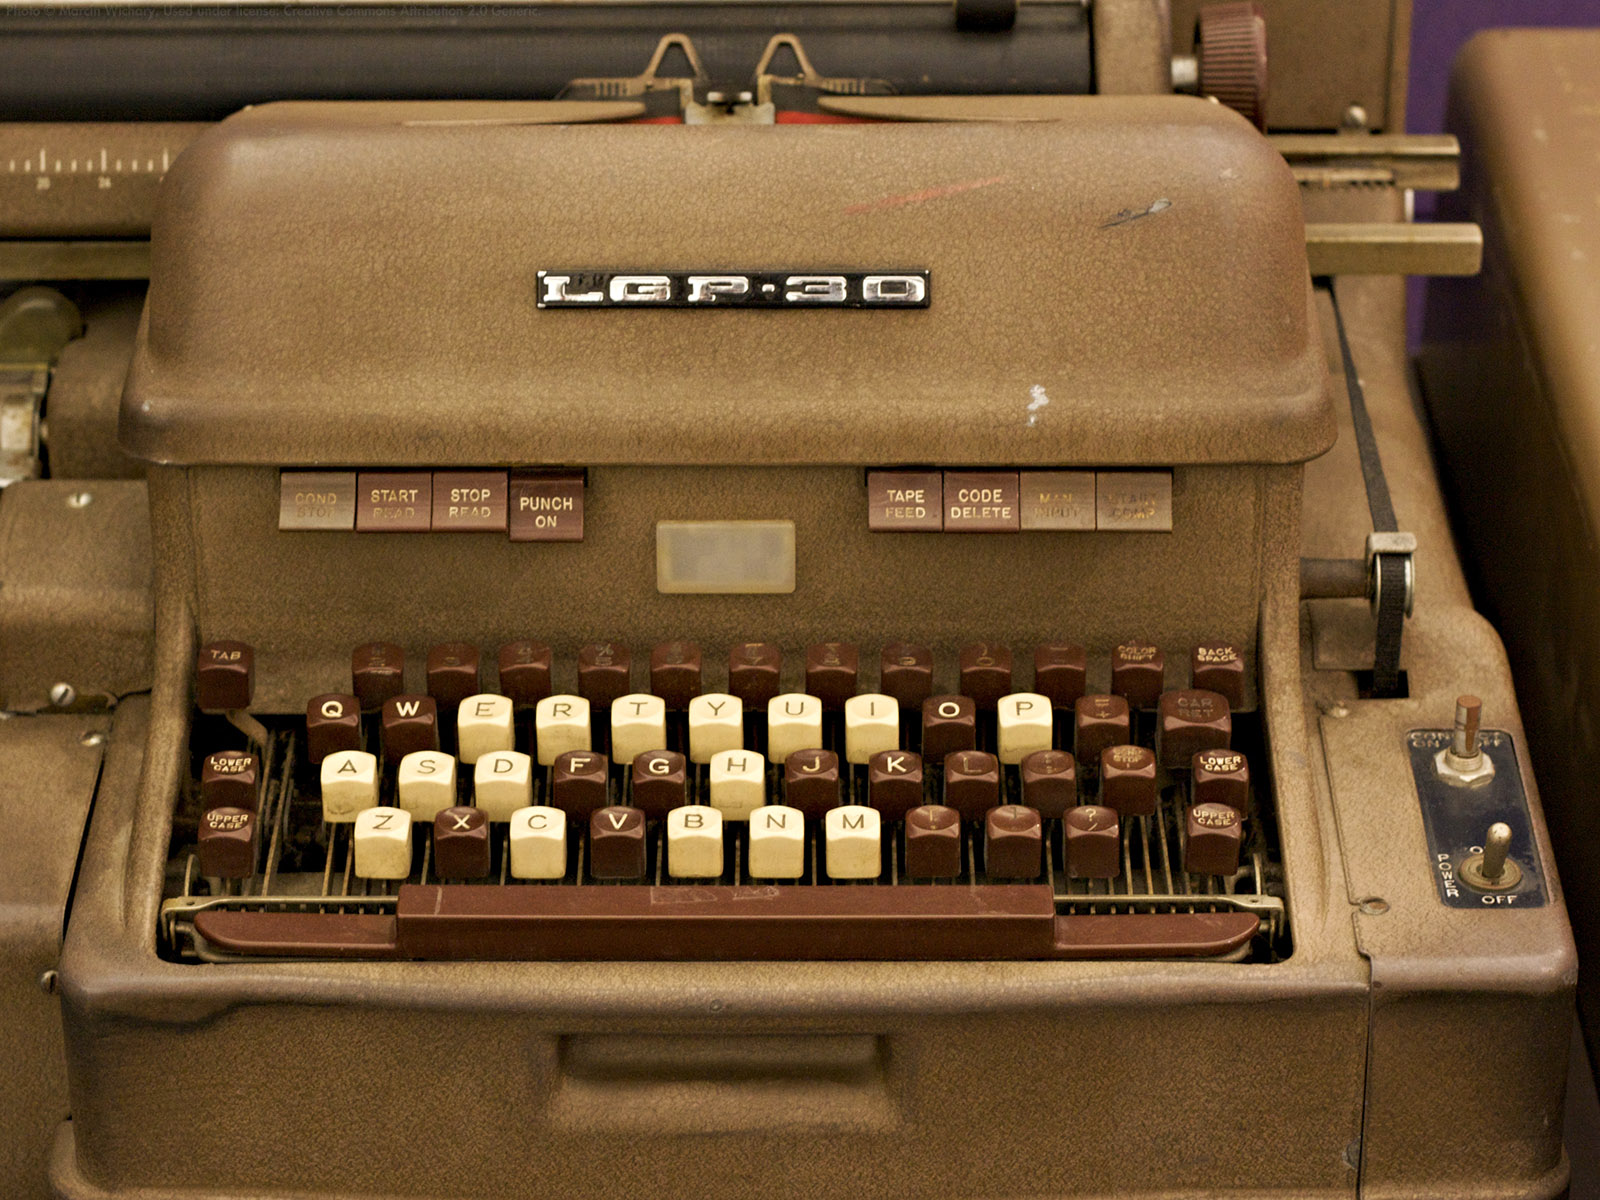 Download mobile wallpaper Typewriter, Man Made for free.